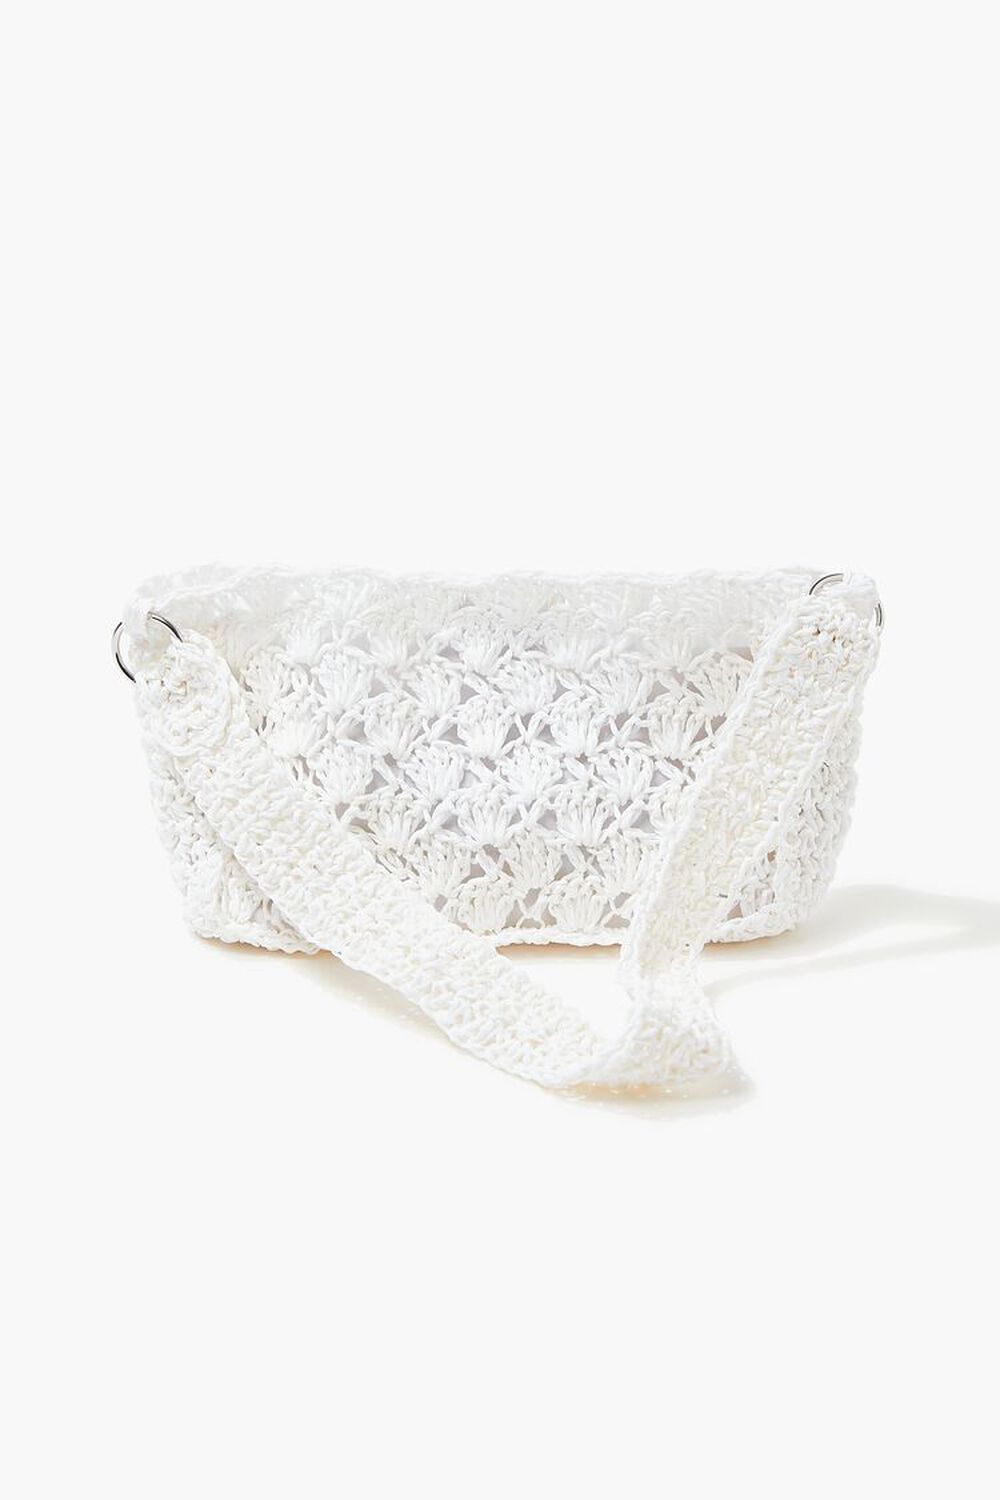 WHITE Crochet Baguette Shoulder Bag, image 1